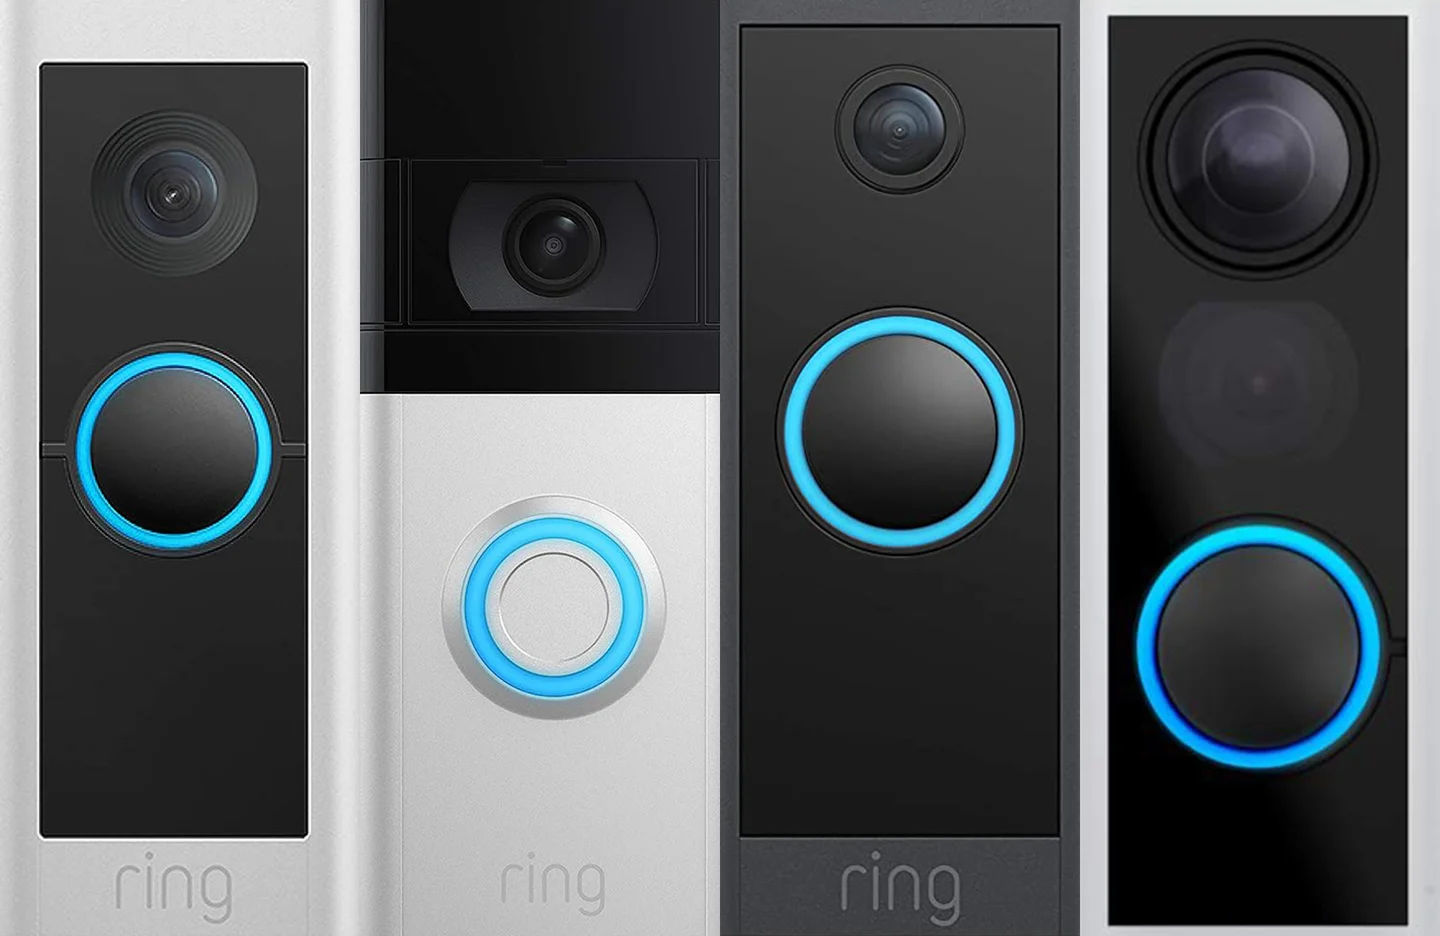 What Is The Best Video Doorbell To Buy